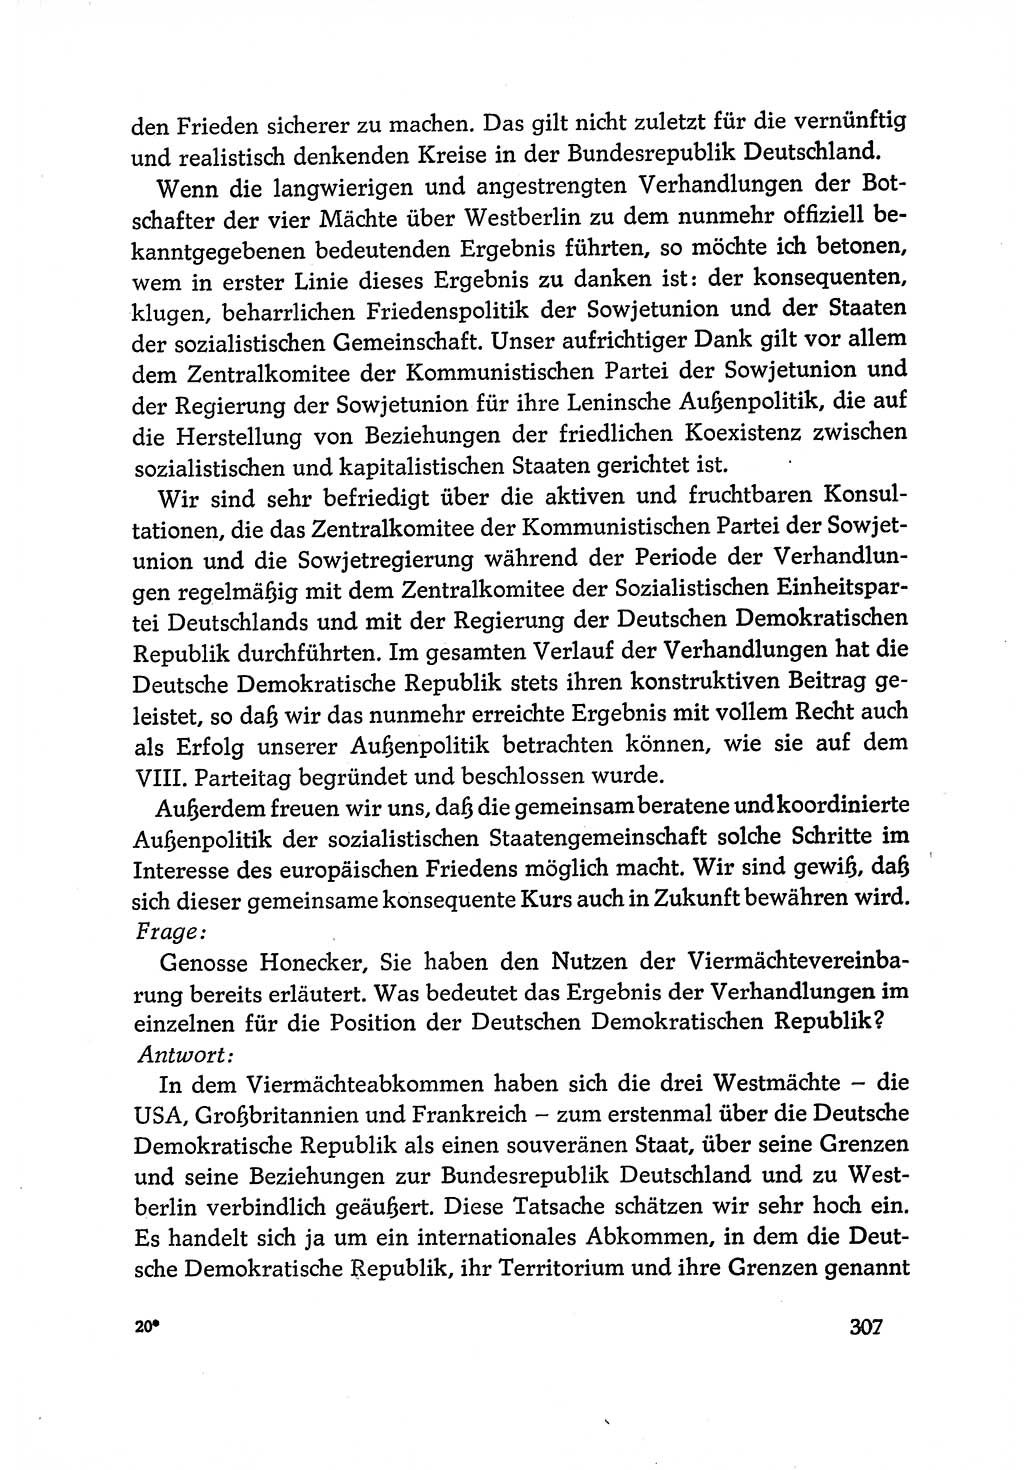 Dokumente der Sozialistischen Einheitspartei Deutschlands (SED) [Deutsche Demokratische Republik (DDR)] 1970-1971, Seite 307 (Dok. SED DDR 1970-1971, S. 307)